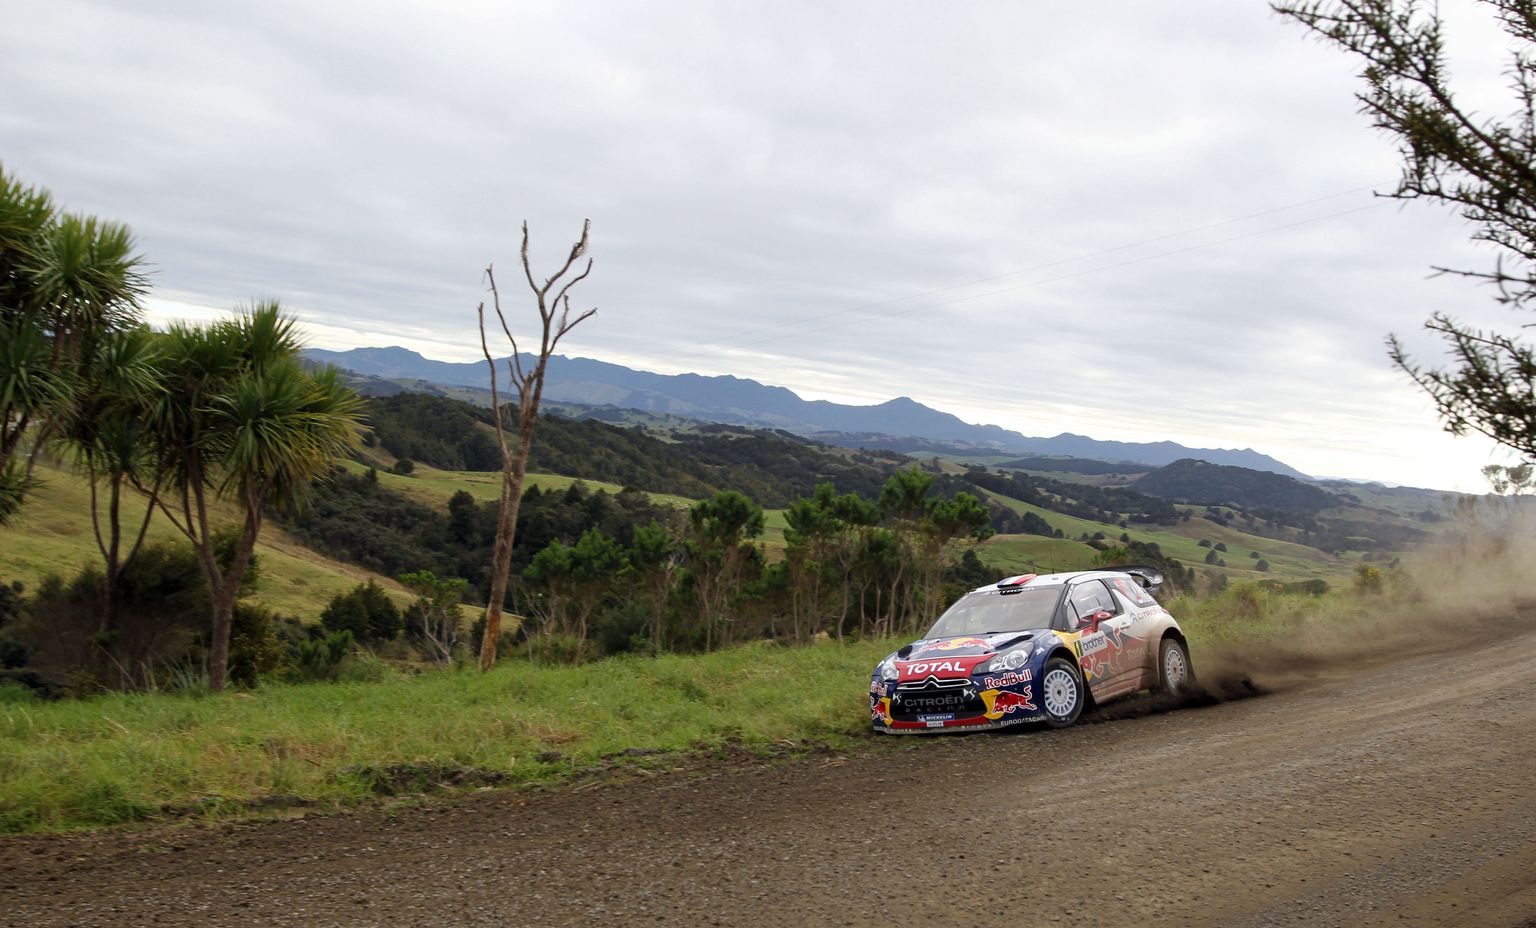 Pilt Uus-Meremaa rallilt, kui sellel eelmisel korral kihutati MM-punktidele aastal 2012. Sõidab Sebastian Loeb Citroen DS3-l.